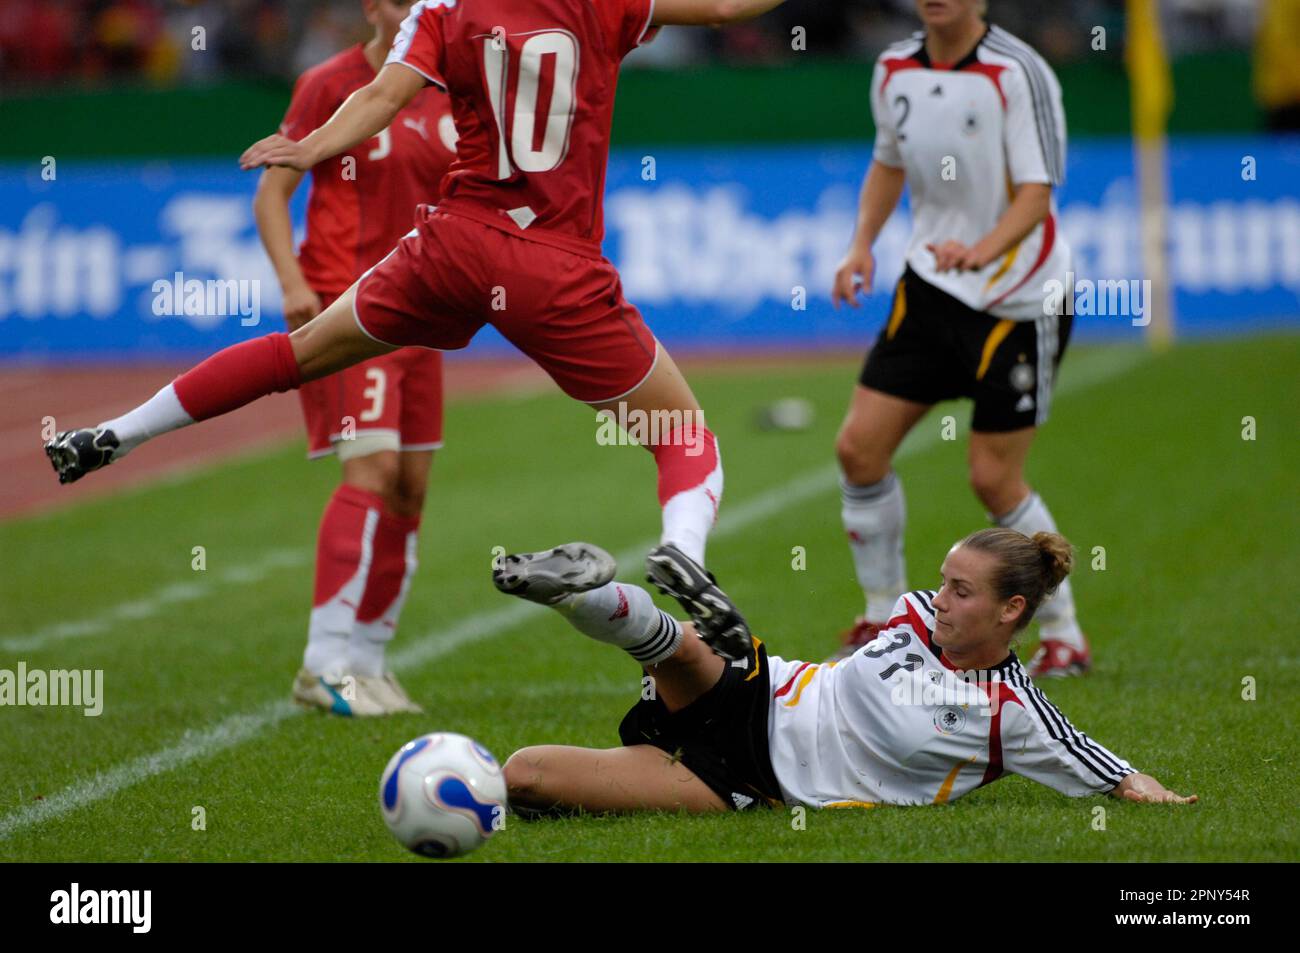 Simone Laudehr, Aktion Fußball EM Qualifikationsspiel Deutschland - Schweiz 7:0, 22.8.2007 in Koblenz, Fußball Frauen Nationalmannschaft Foto Stock